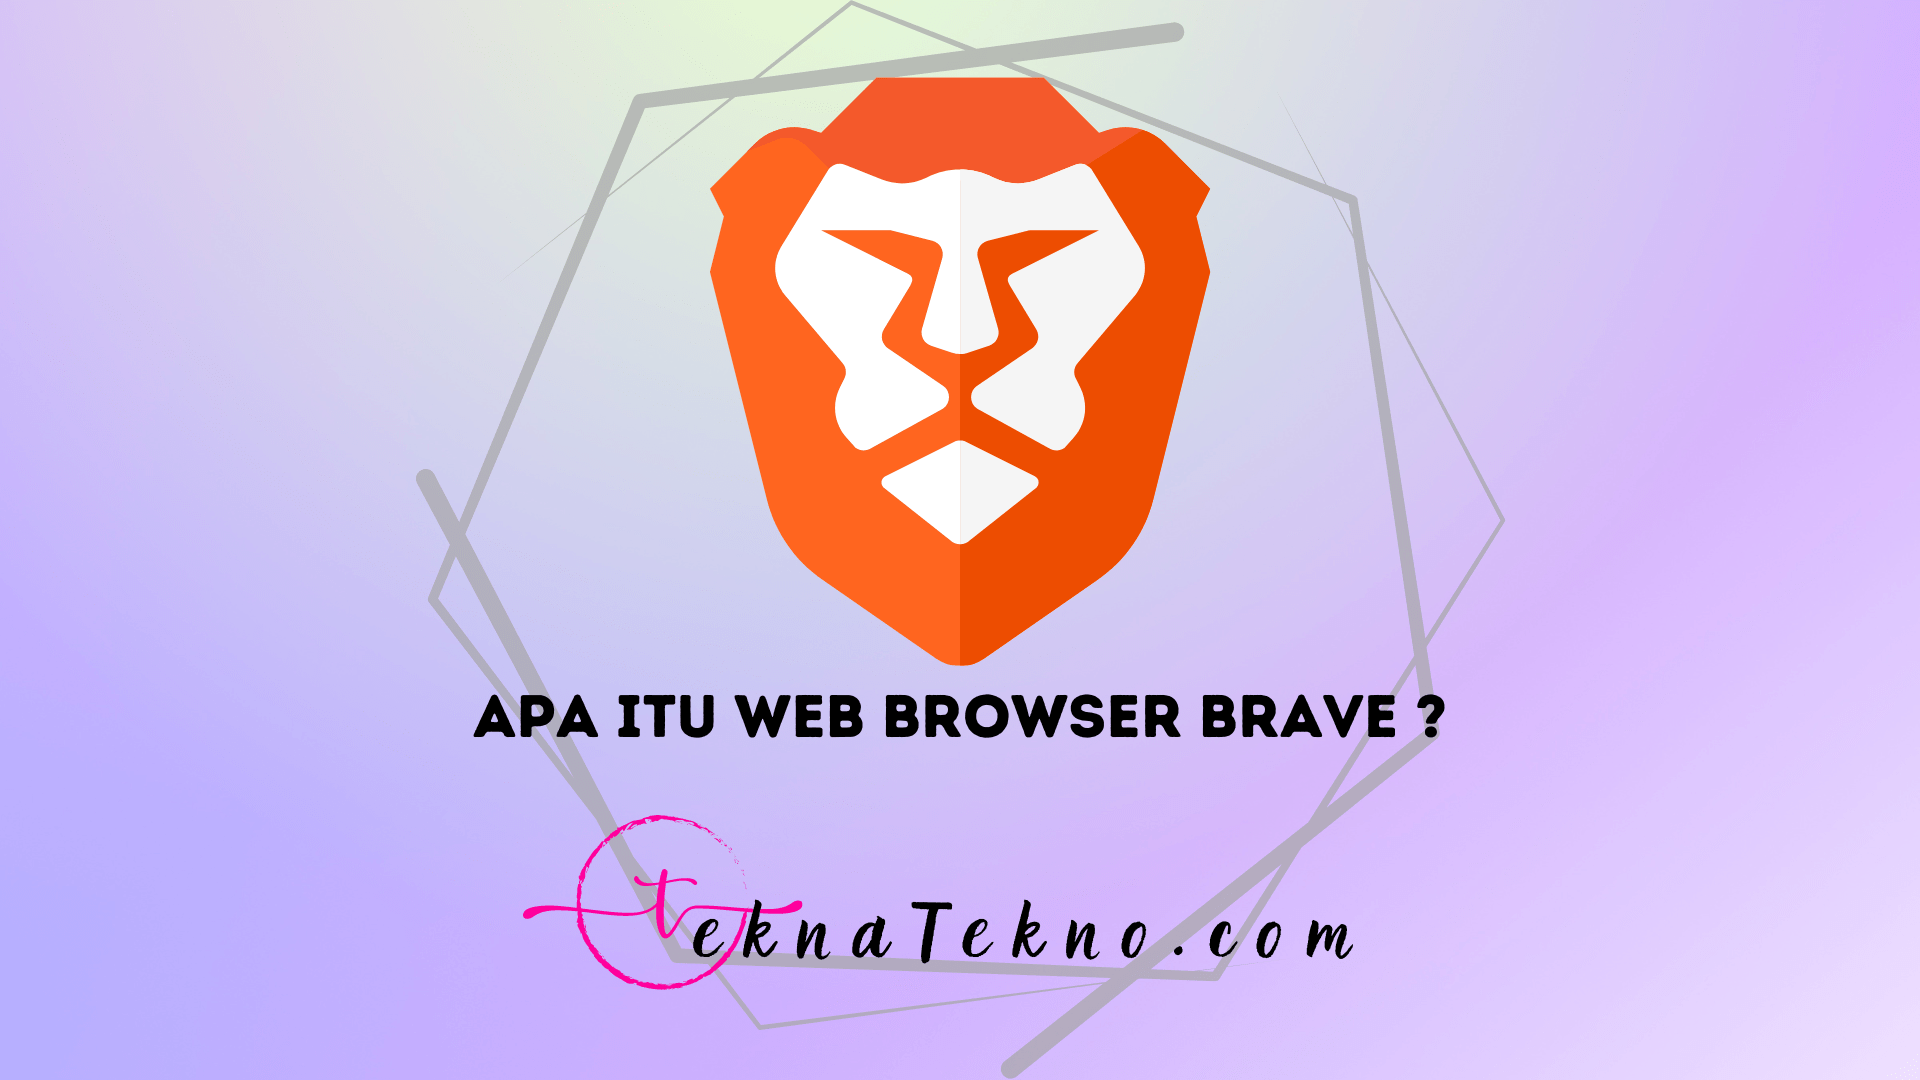 Web Browser Brave: Pengertian, Sejarah, Fitur dan Cara Downloadnya